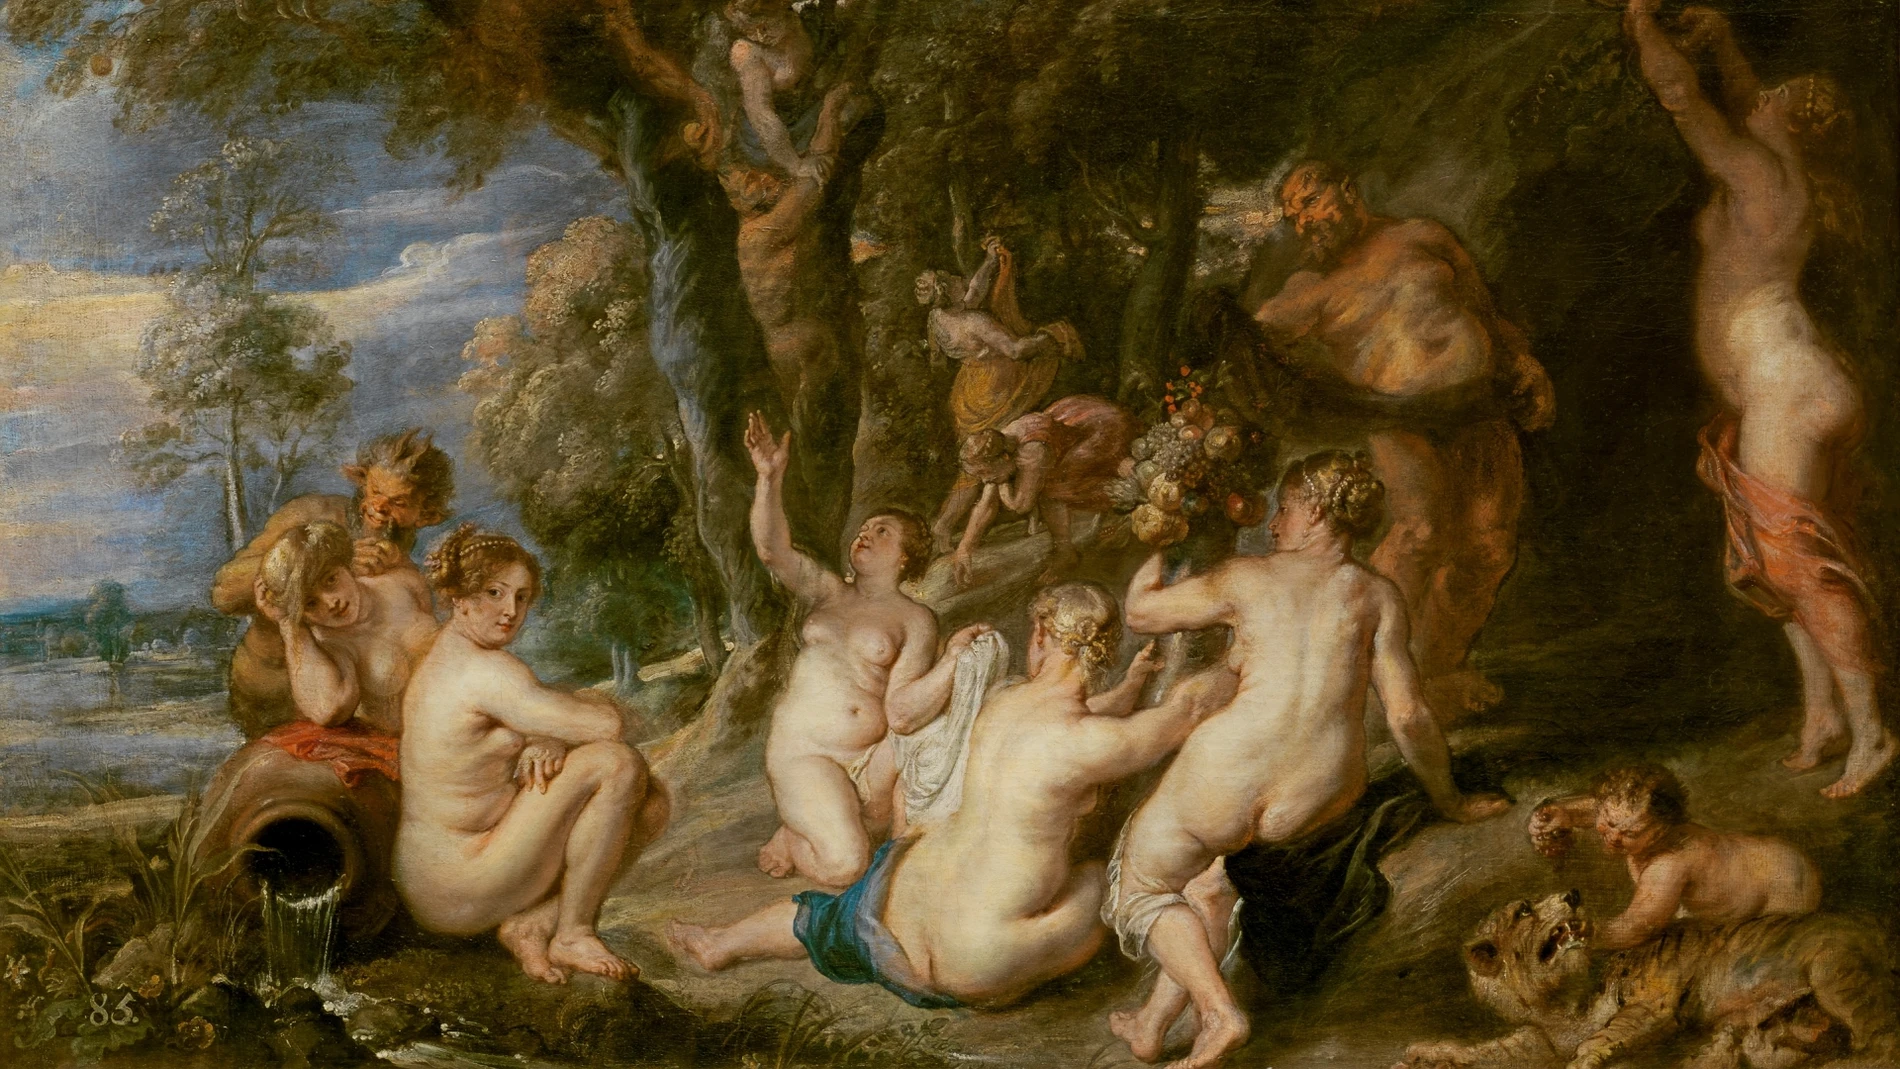 Rubens retrató así a estas mujeres en su óleo «Ninfas y sátiros» (1615)